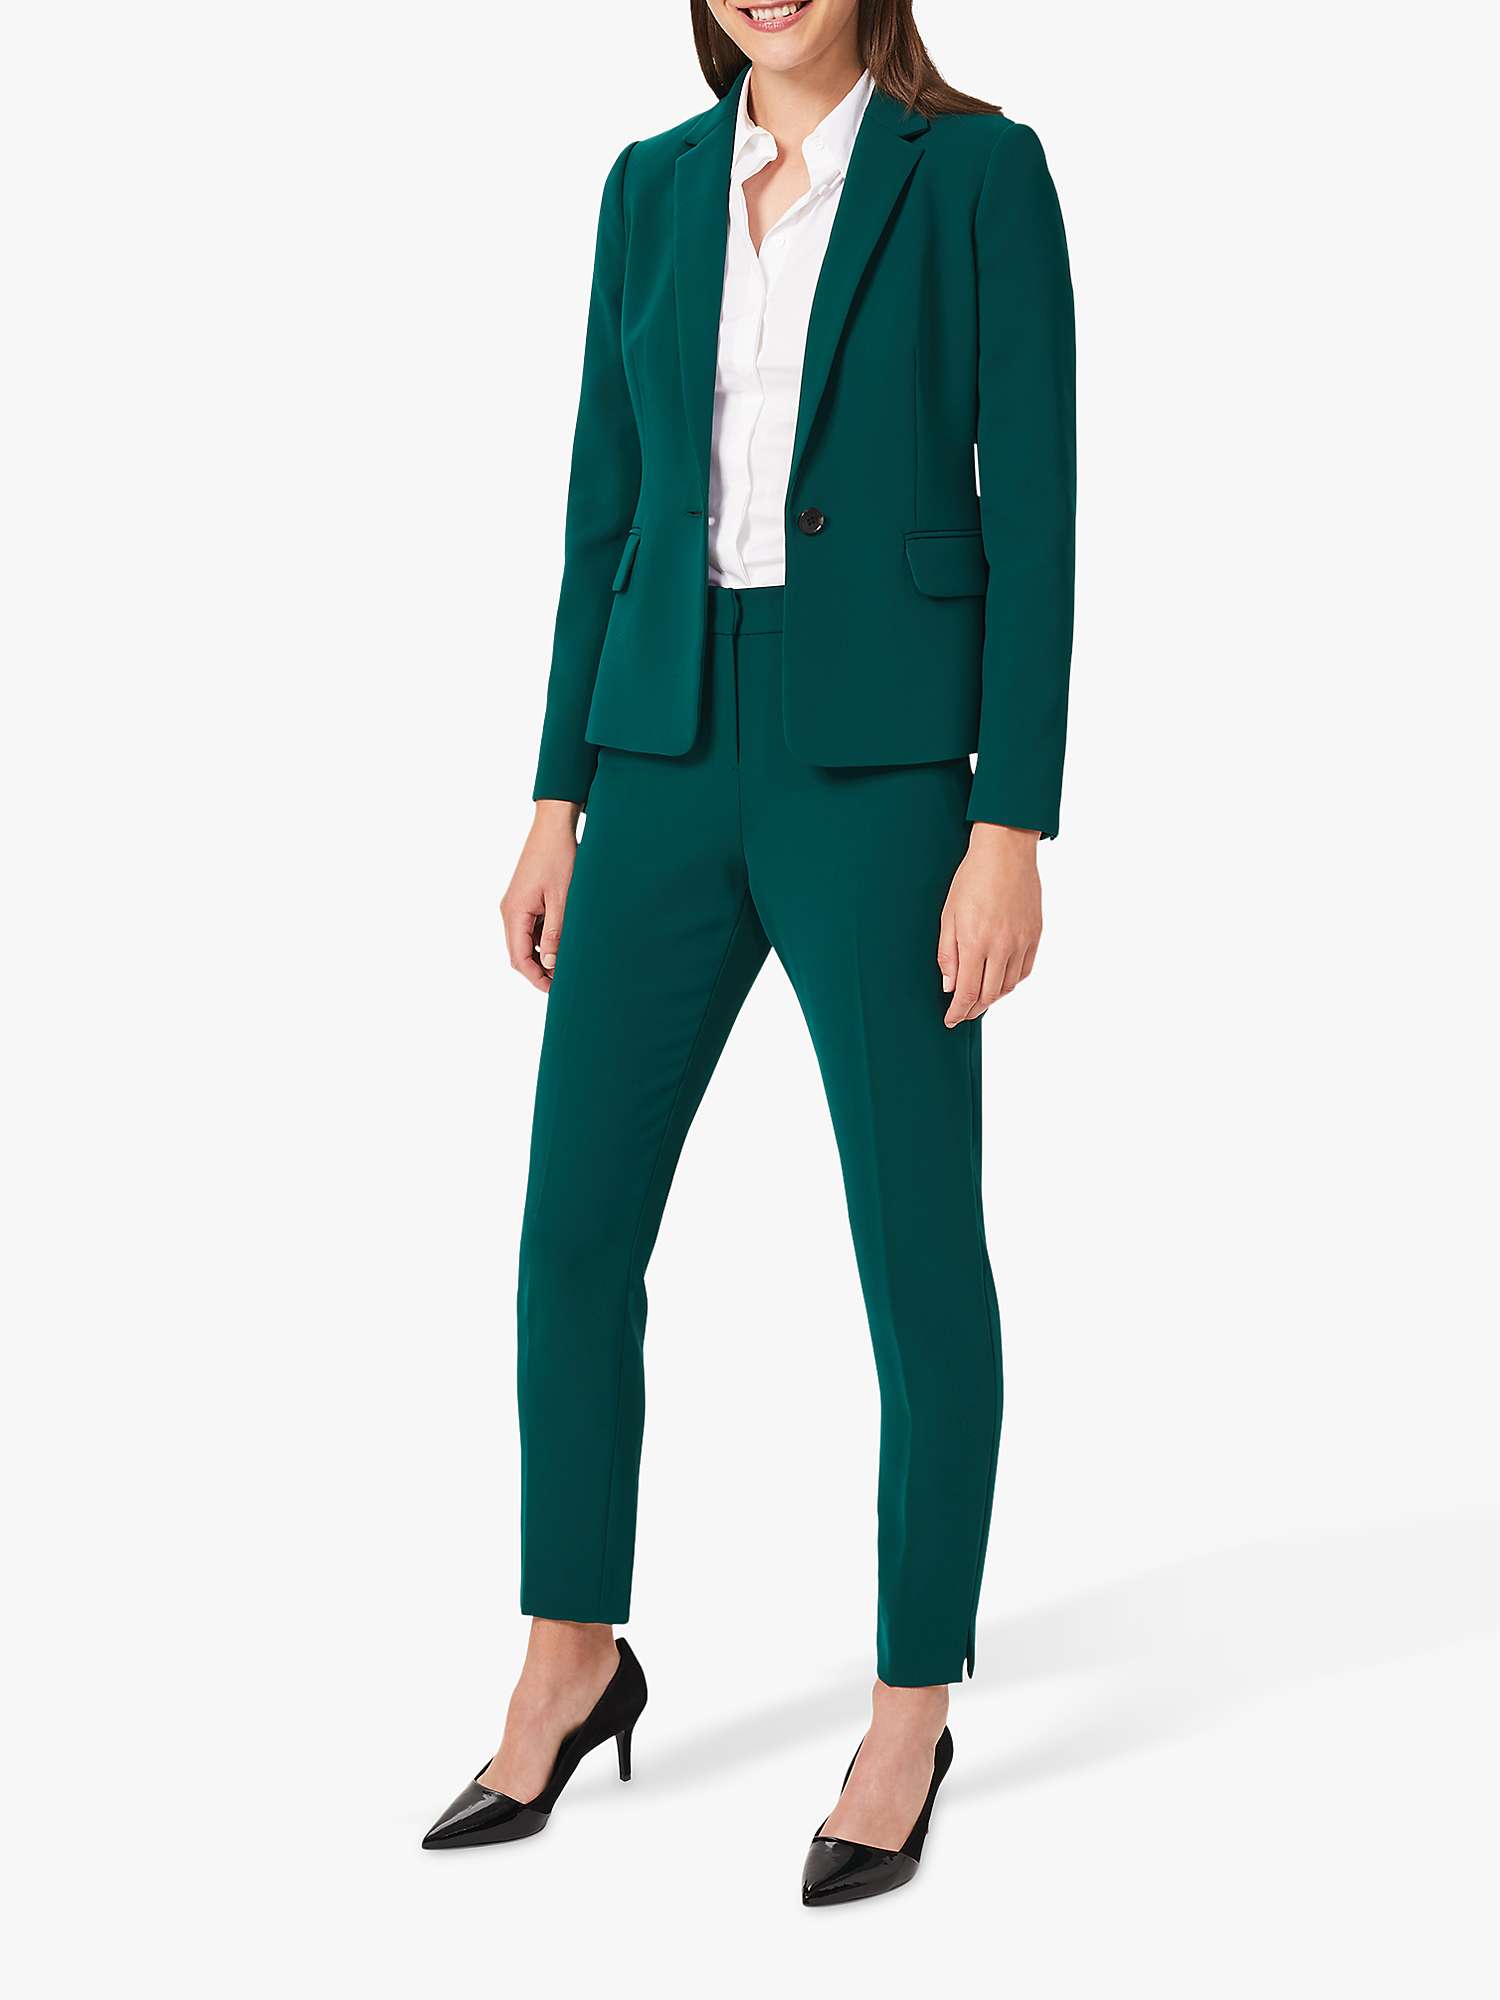 Buy Hobbs Petite Adelia Slim Trousers, Leaf Green Online at johnlewis.com